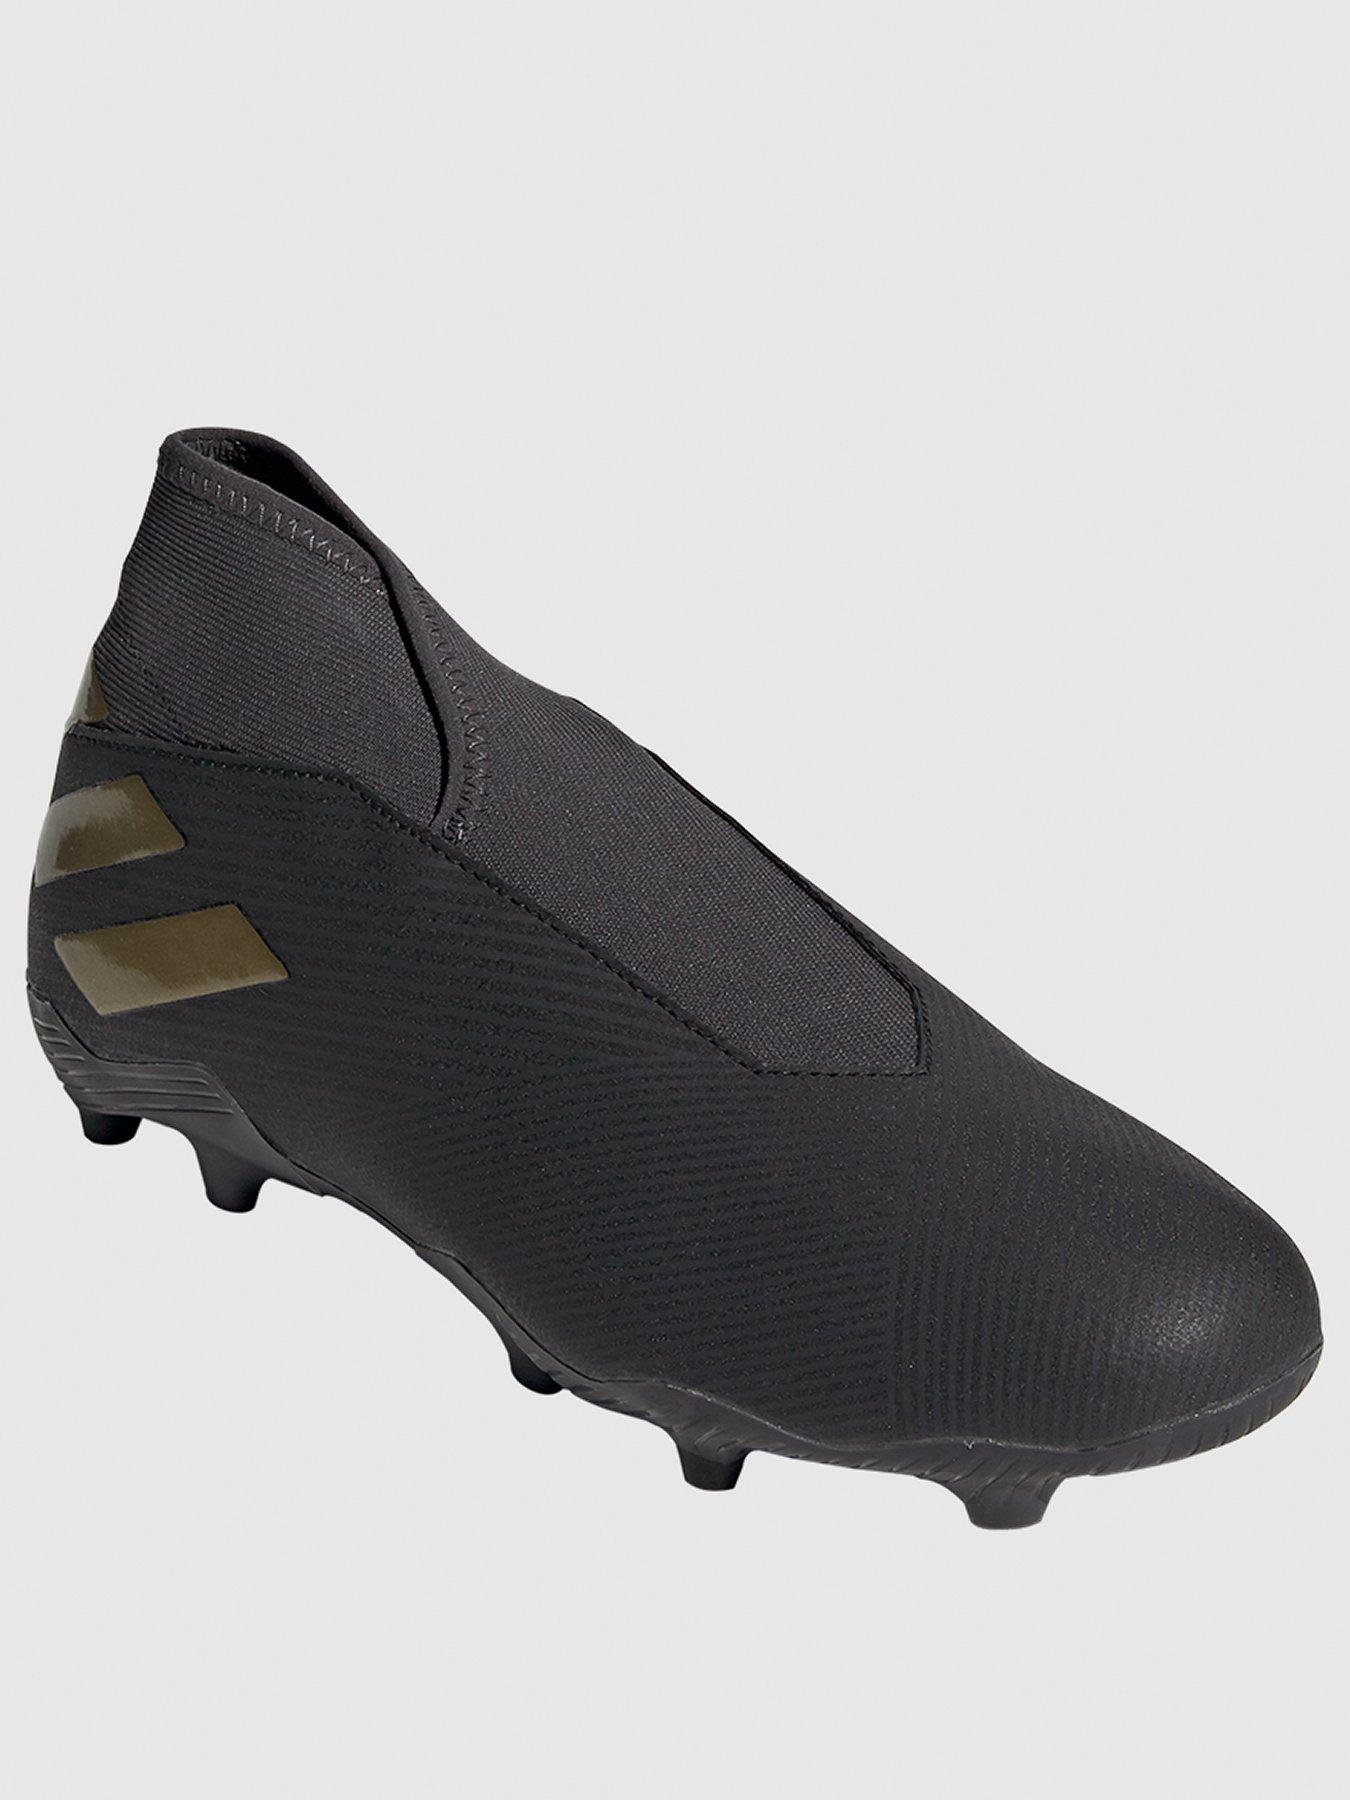 Adidas | Football boots | Football 